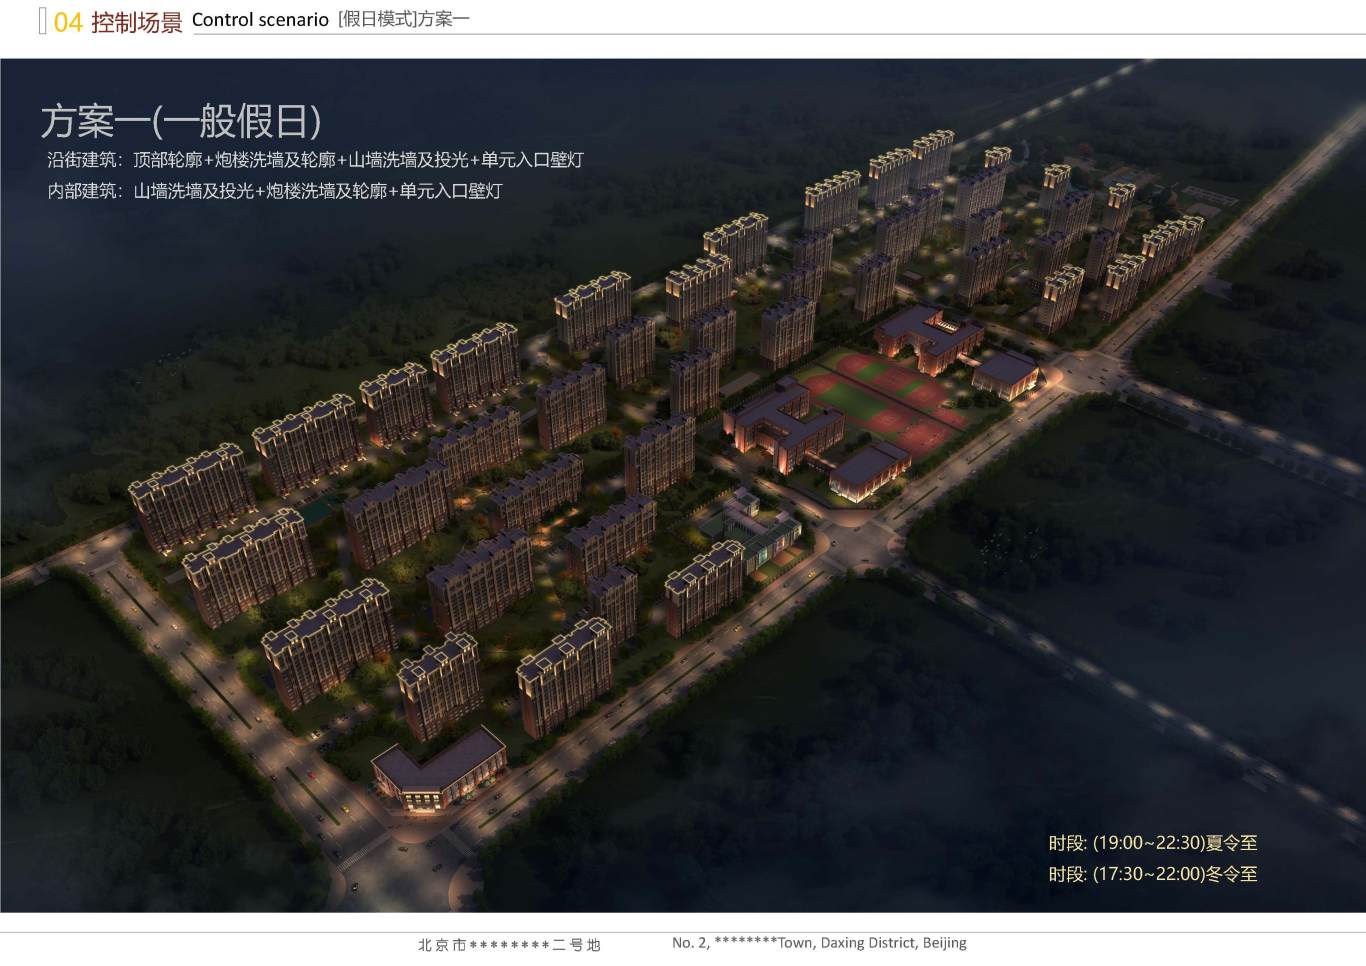 北京市大兴区*****二号地夜景照明项目案例图39